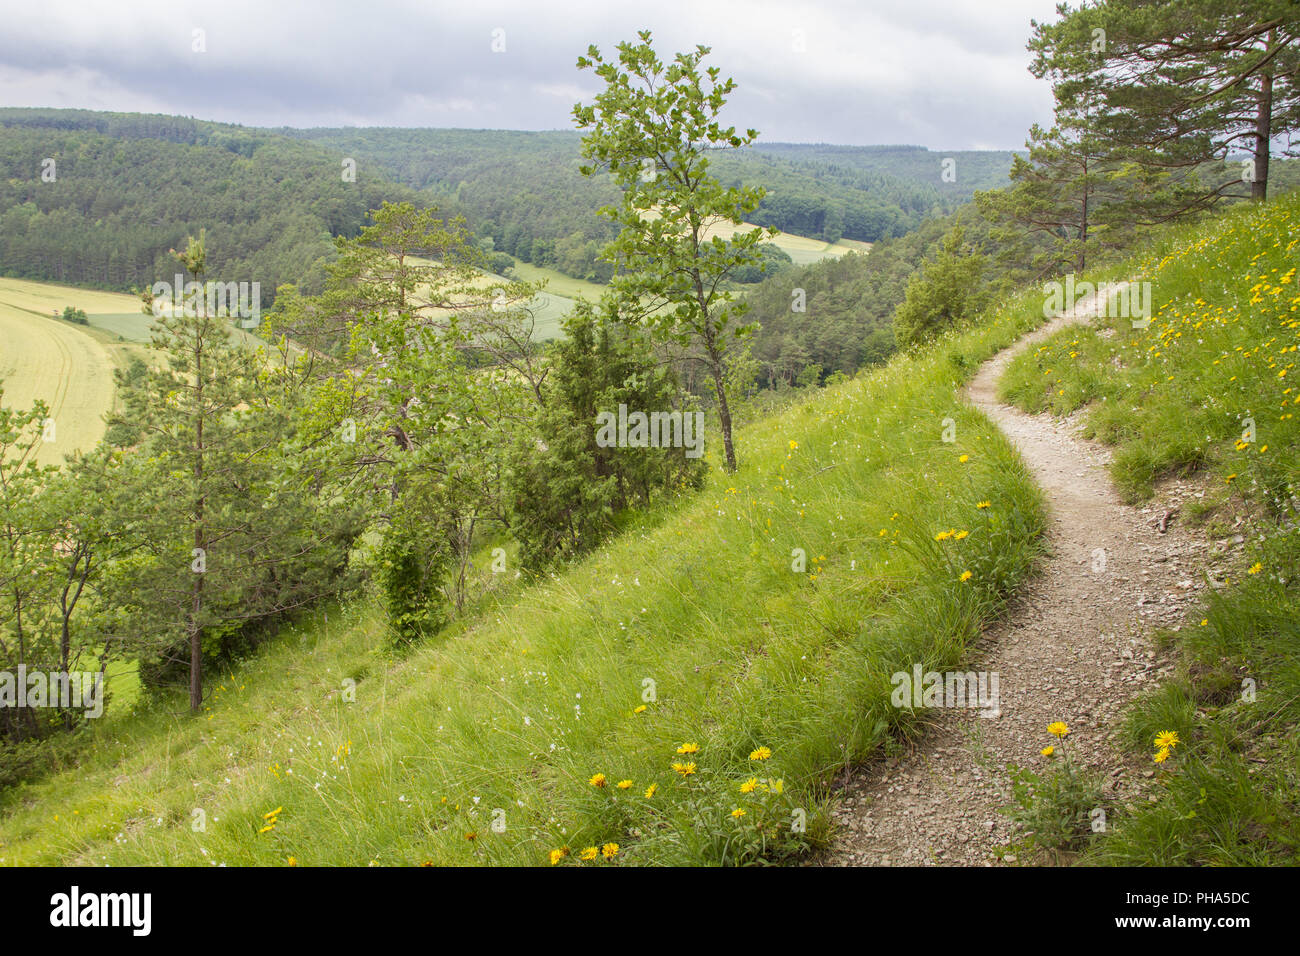 Paesaggio protetto nella valle Tauber vicino Koenigheim, Germania Foto Stock